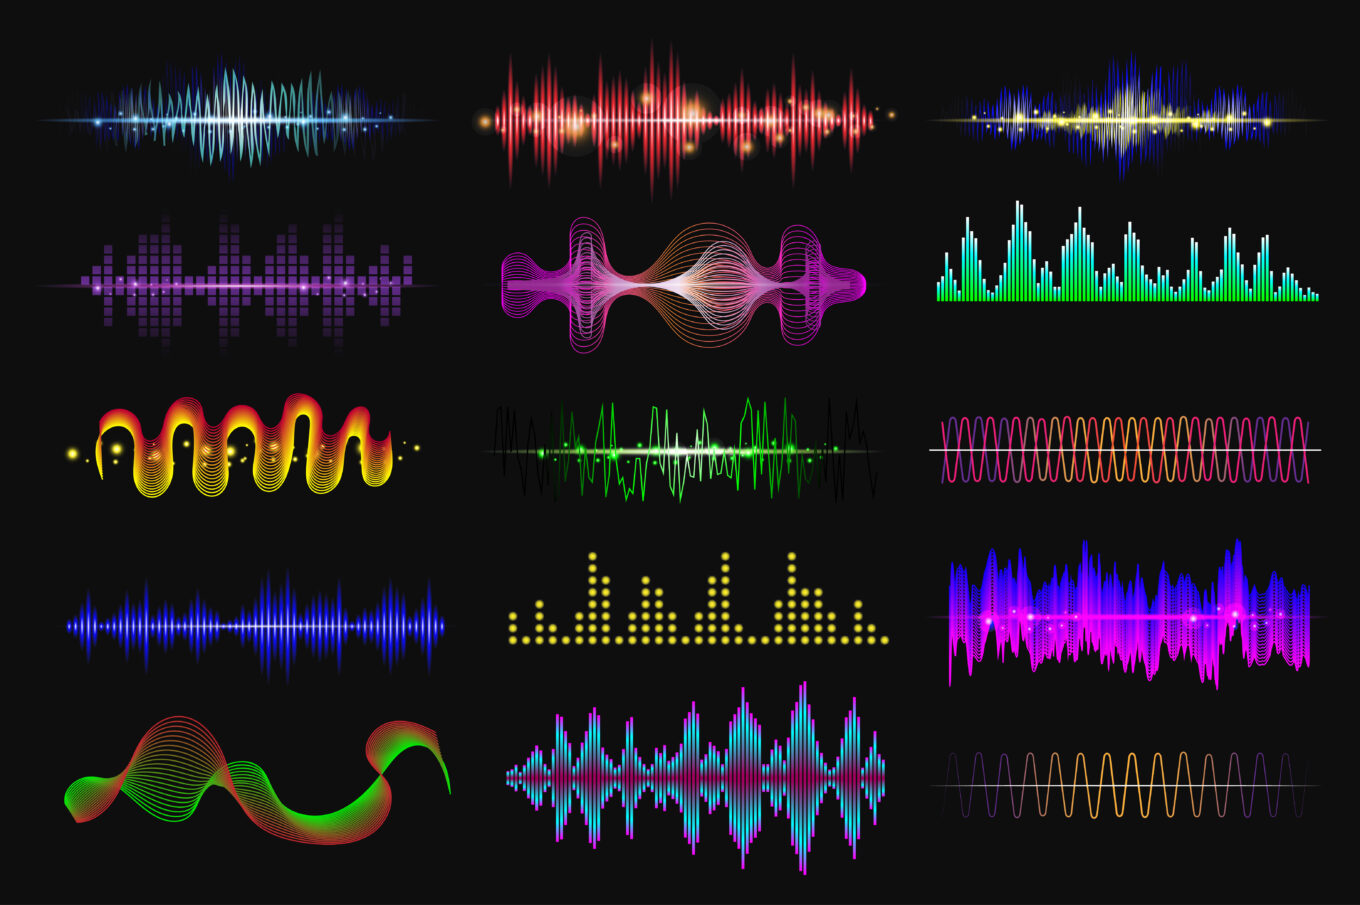 Sound Waves Set by alexdndz